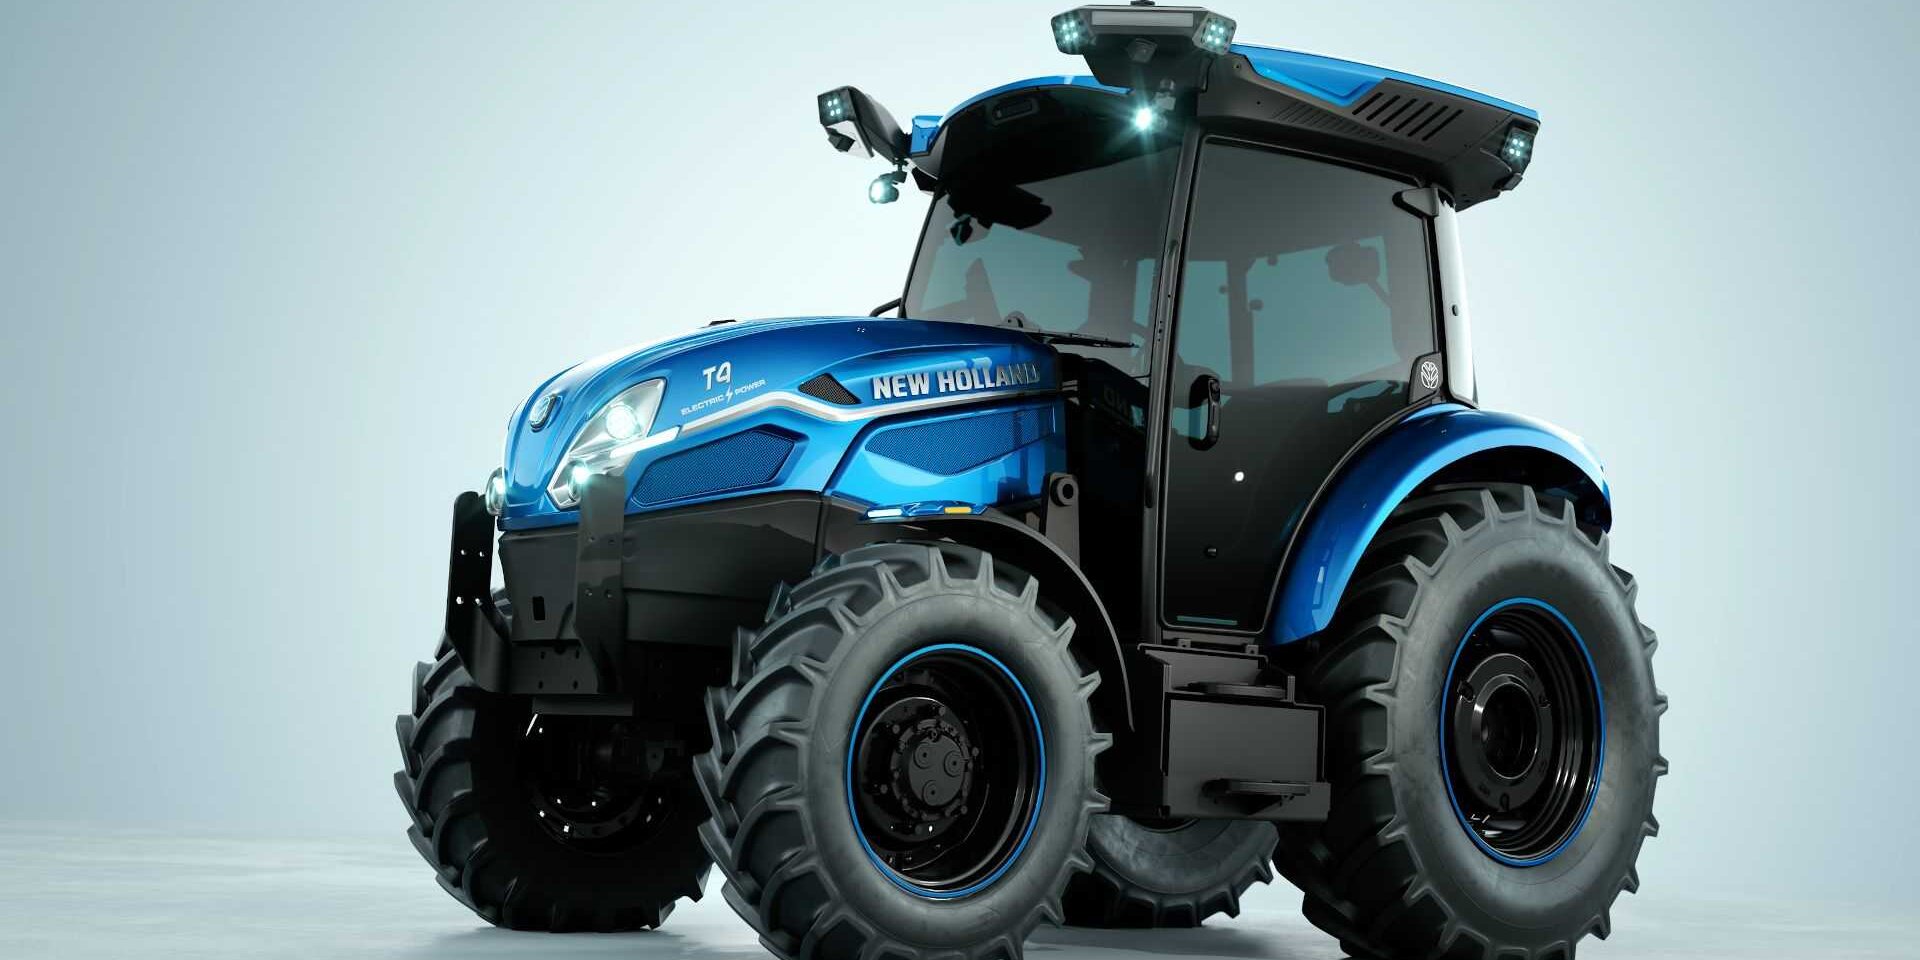 CNH Industrial stellt Elektro-Traktor New Holland T4 vor